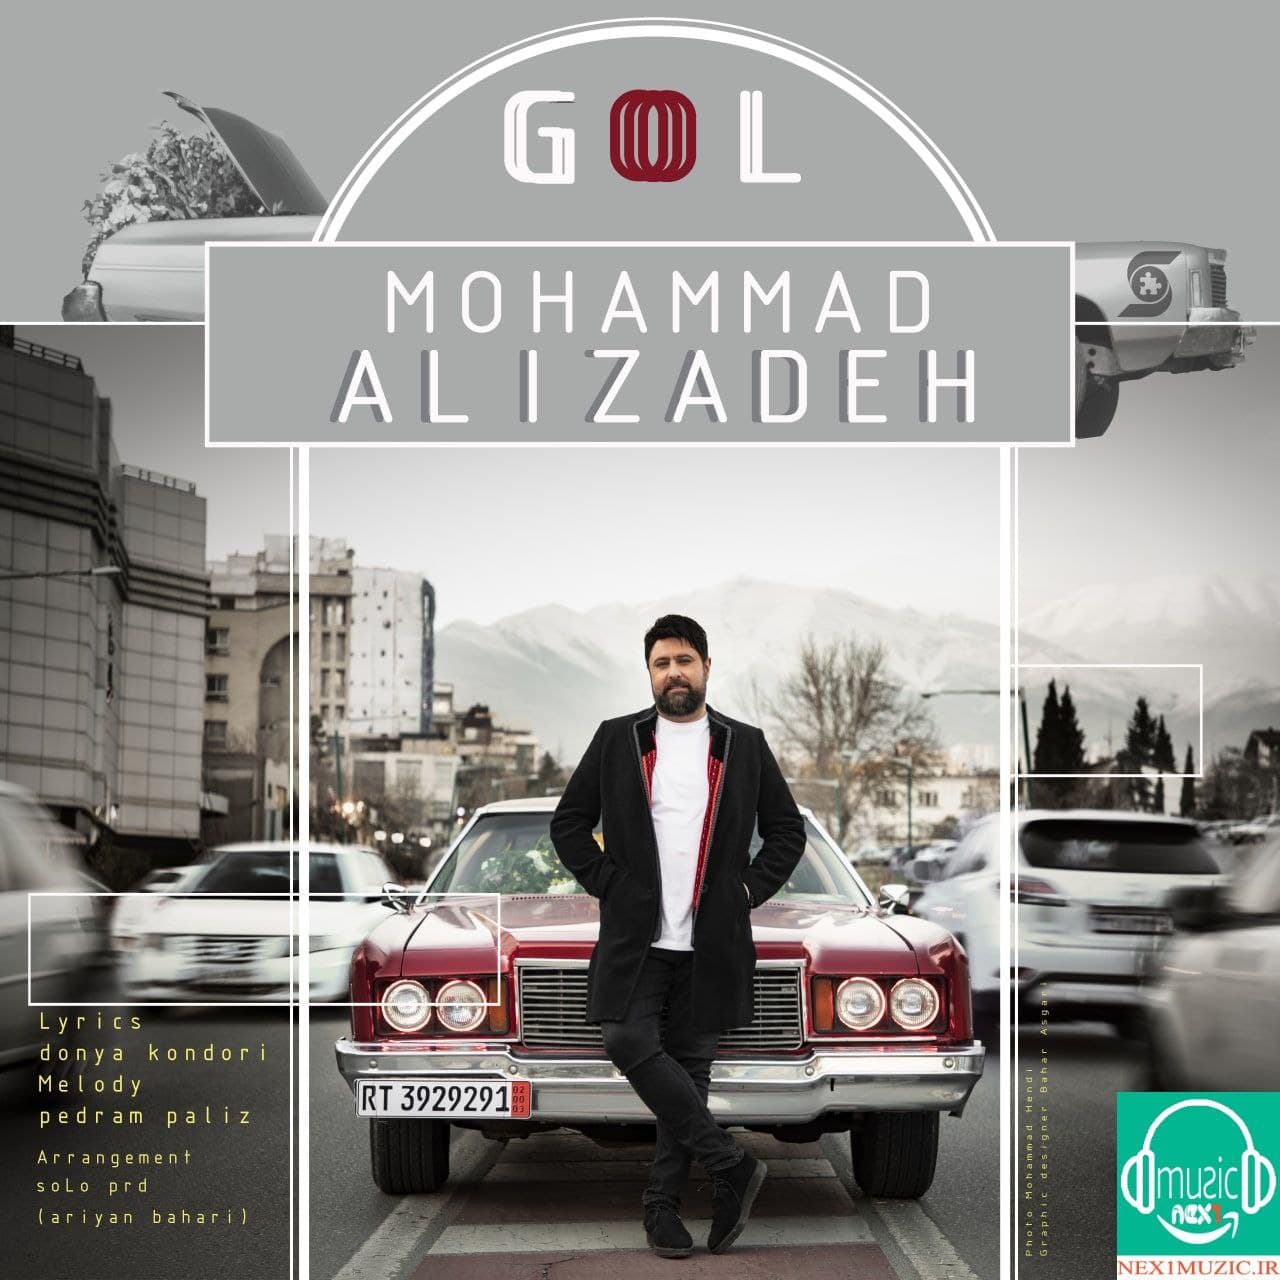 آهنگِ جدید و زیبایِ محمد علیزاده به نامِ «گل»